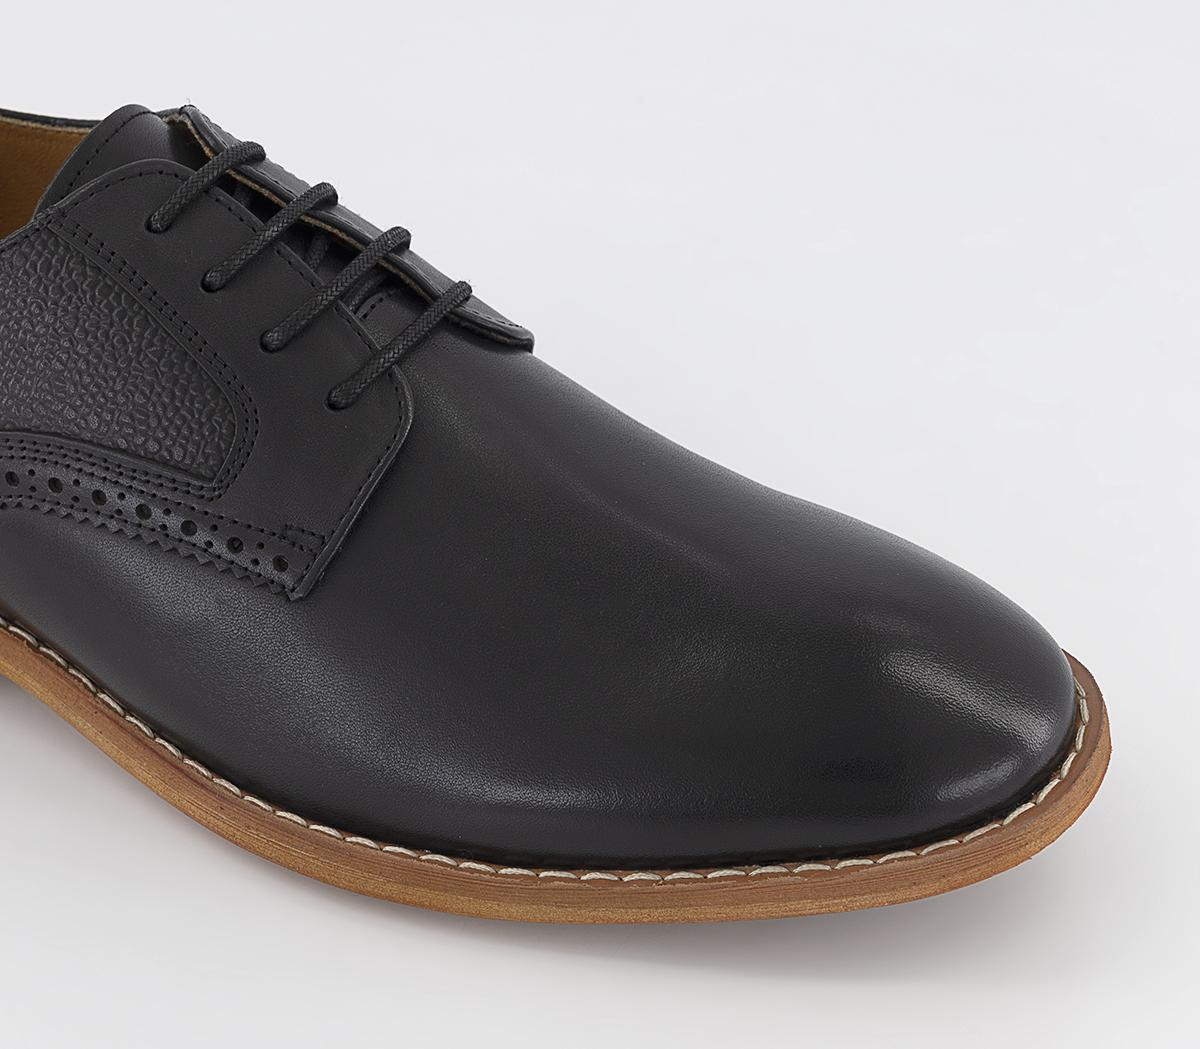 OFFICE Martley Pebble Grain Quarter Derby Shoes Black Leather - Men’s ...